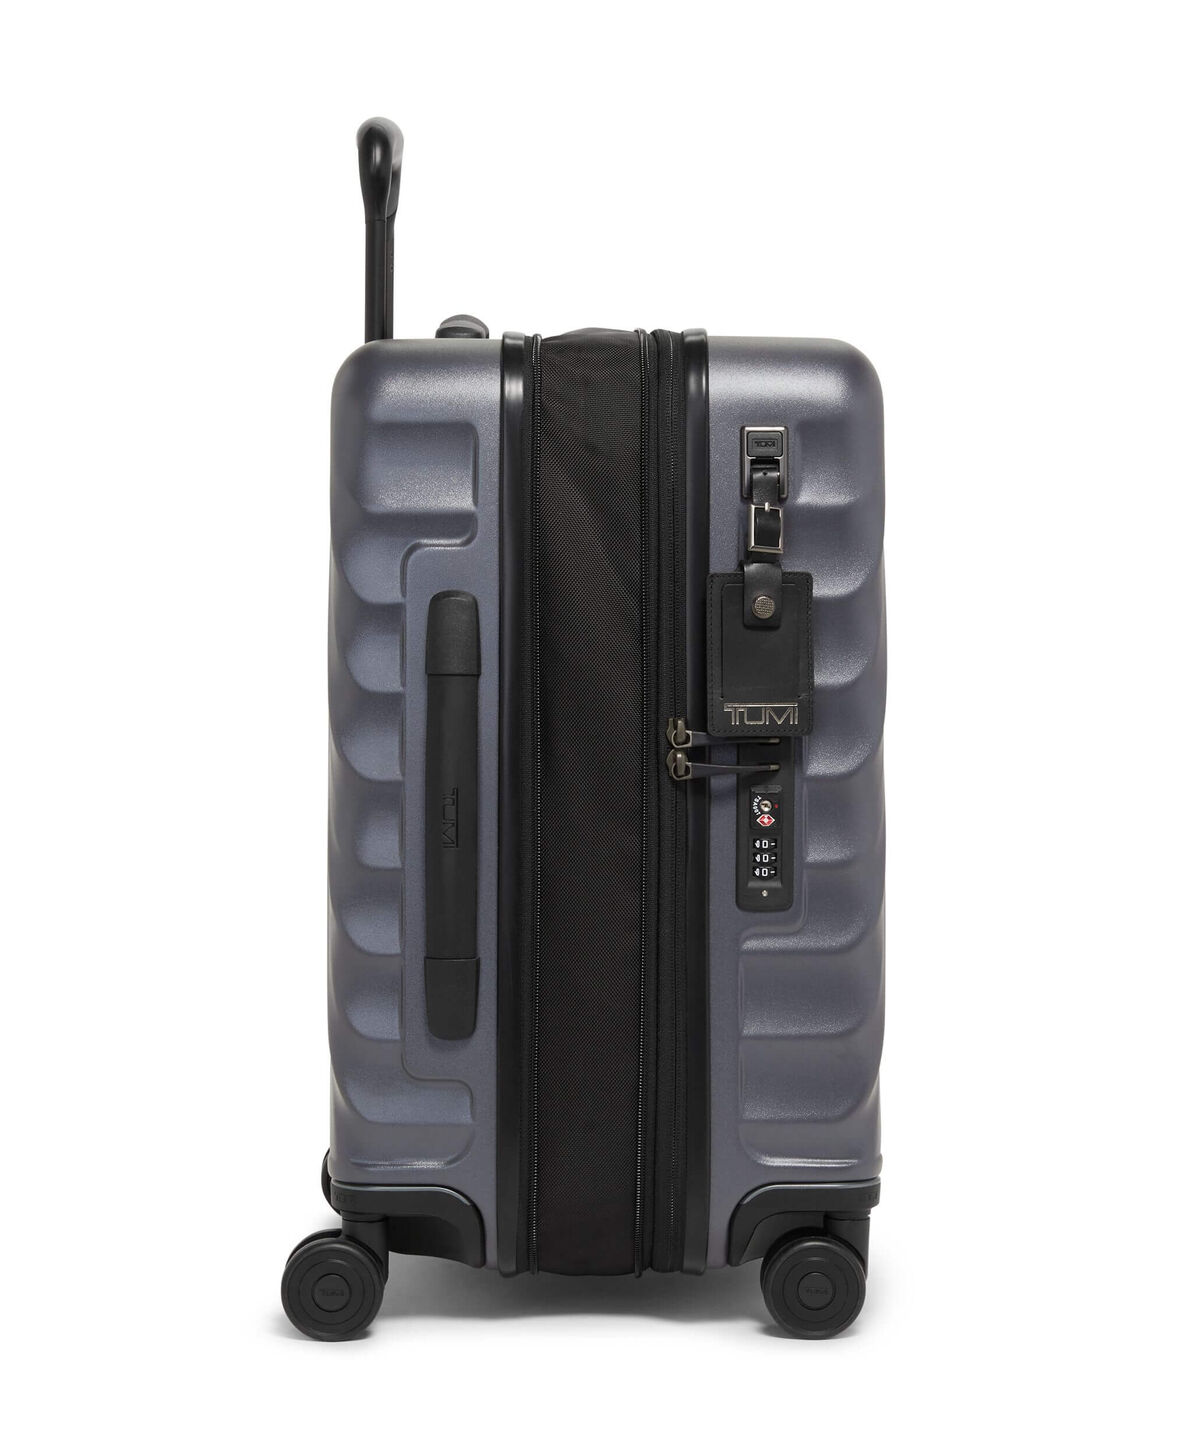 BackSpace 9383 Gepäck, Taschen und Koffer Gepäck, Taschen und